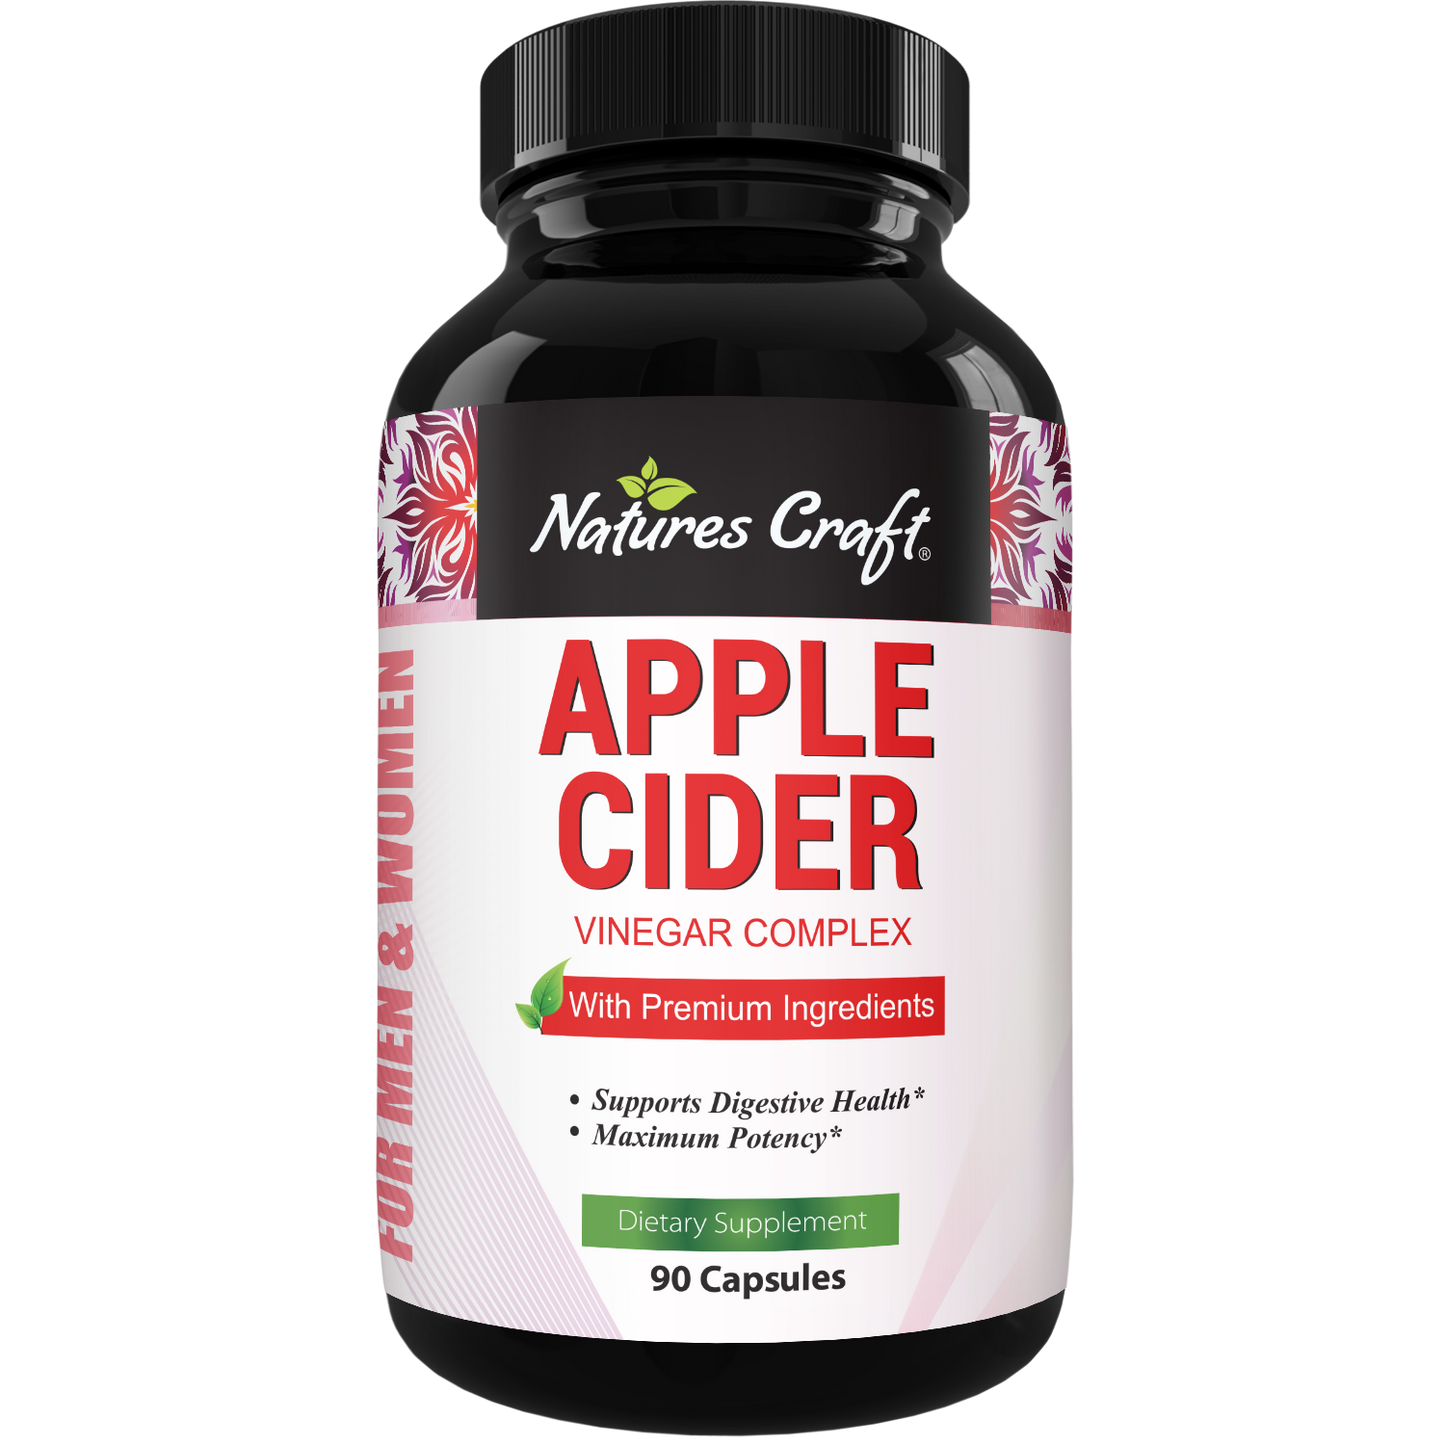 Apple Cider Vinegar Complex - 90 Capsules - Nature's Craft